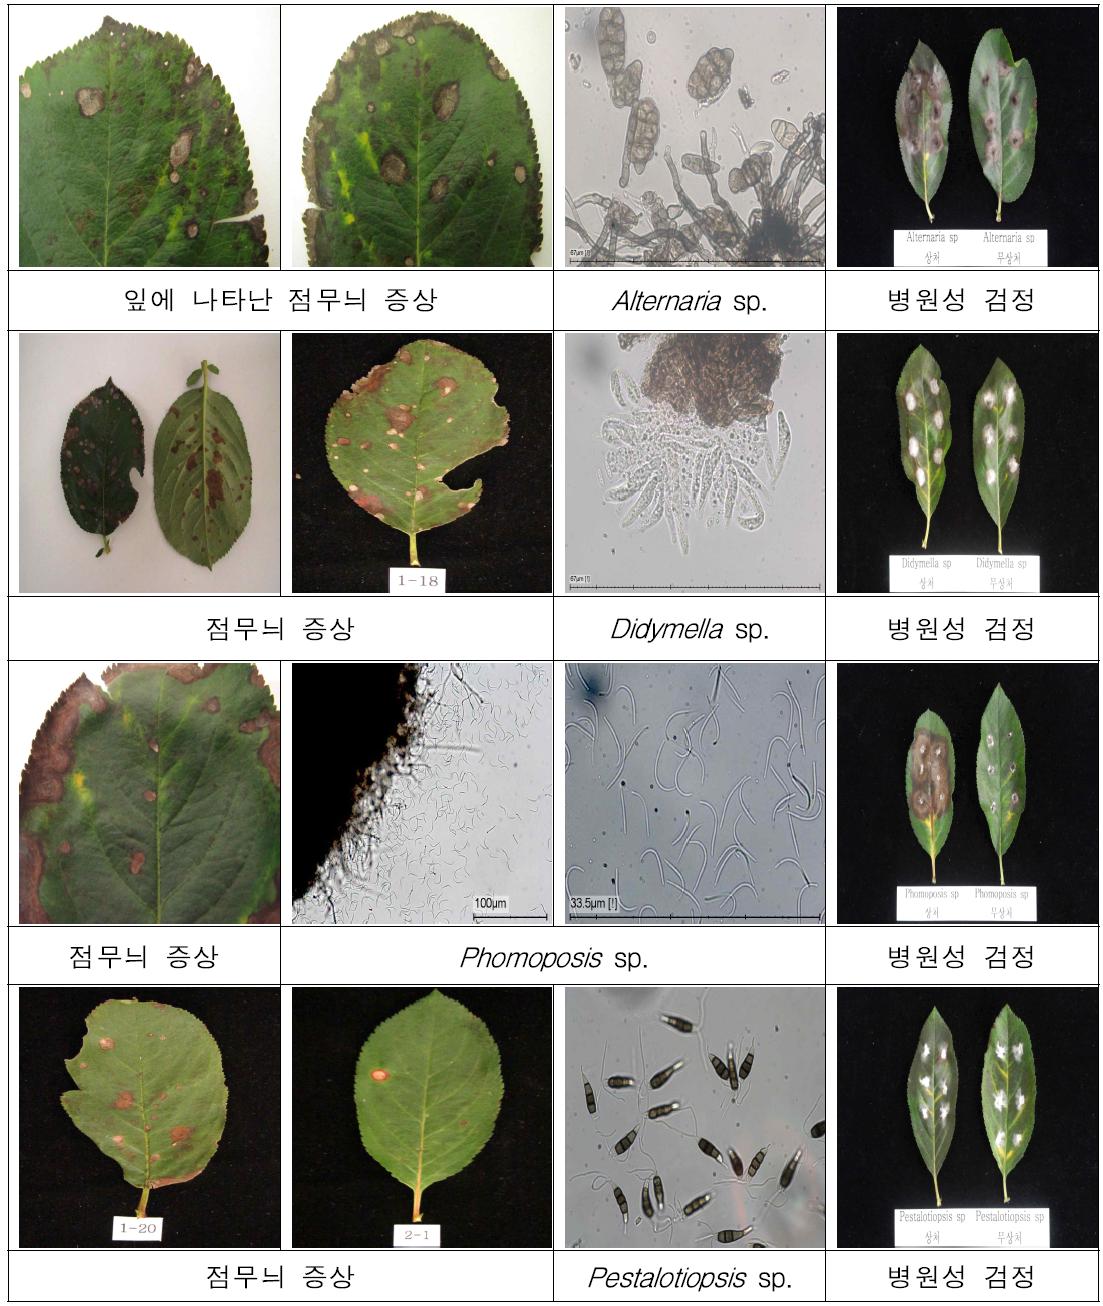 아로니아 잎 점무늬 증상에서 병원균 분리 및 병원성 검정 결과